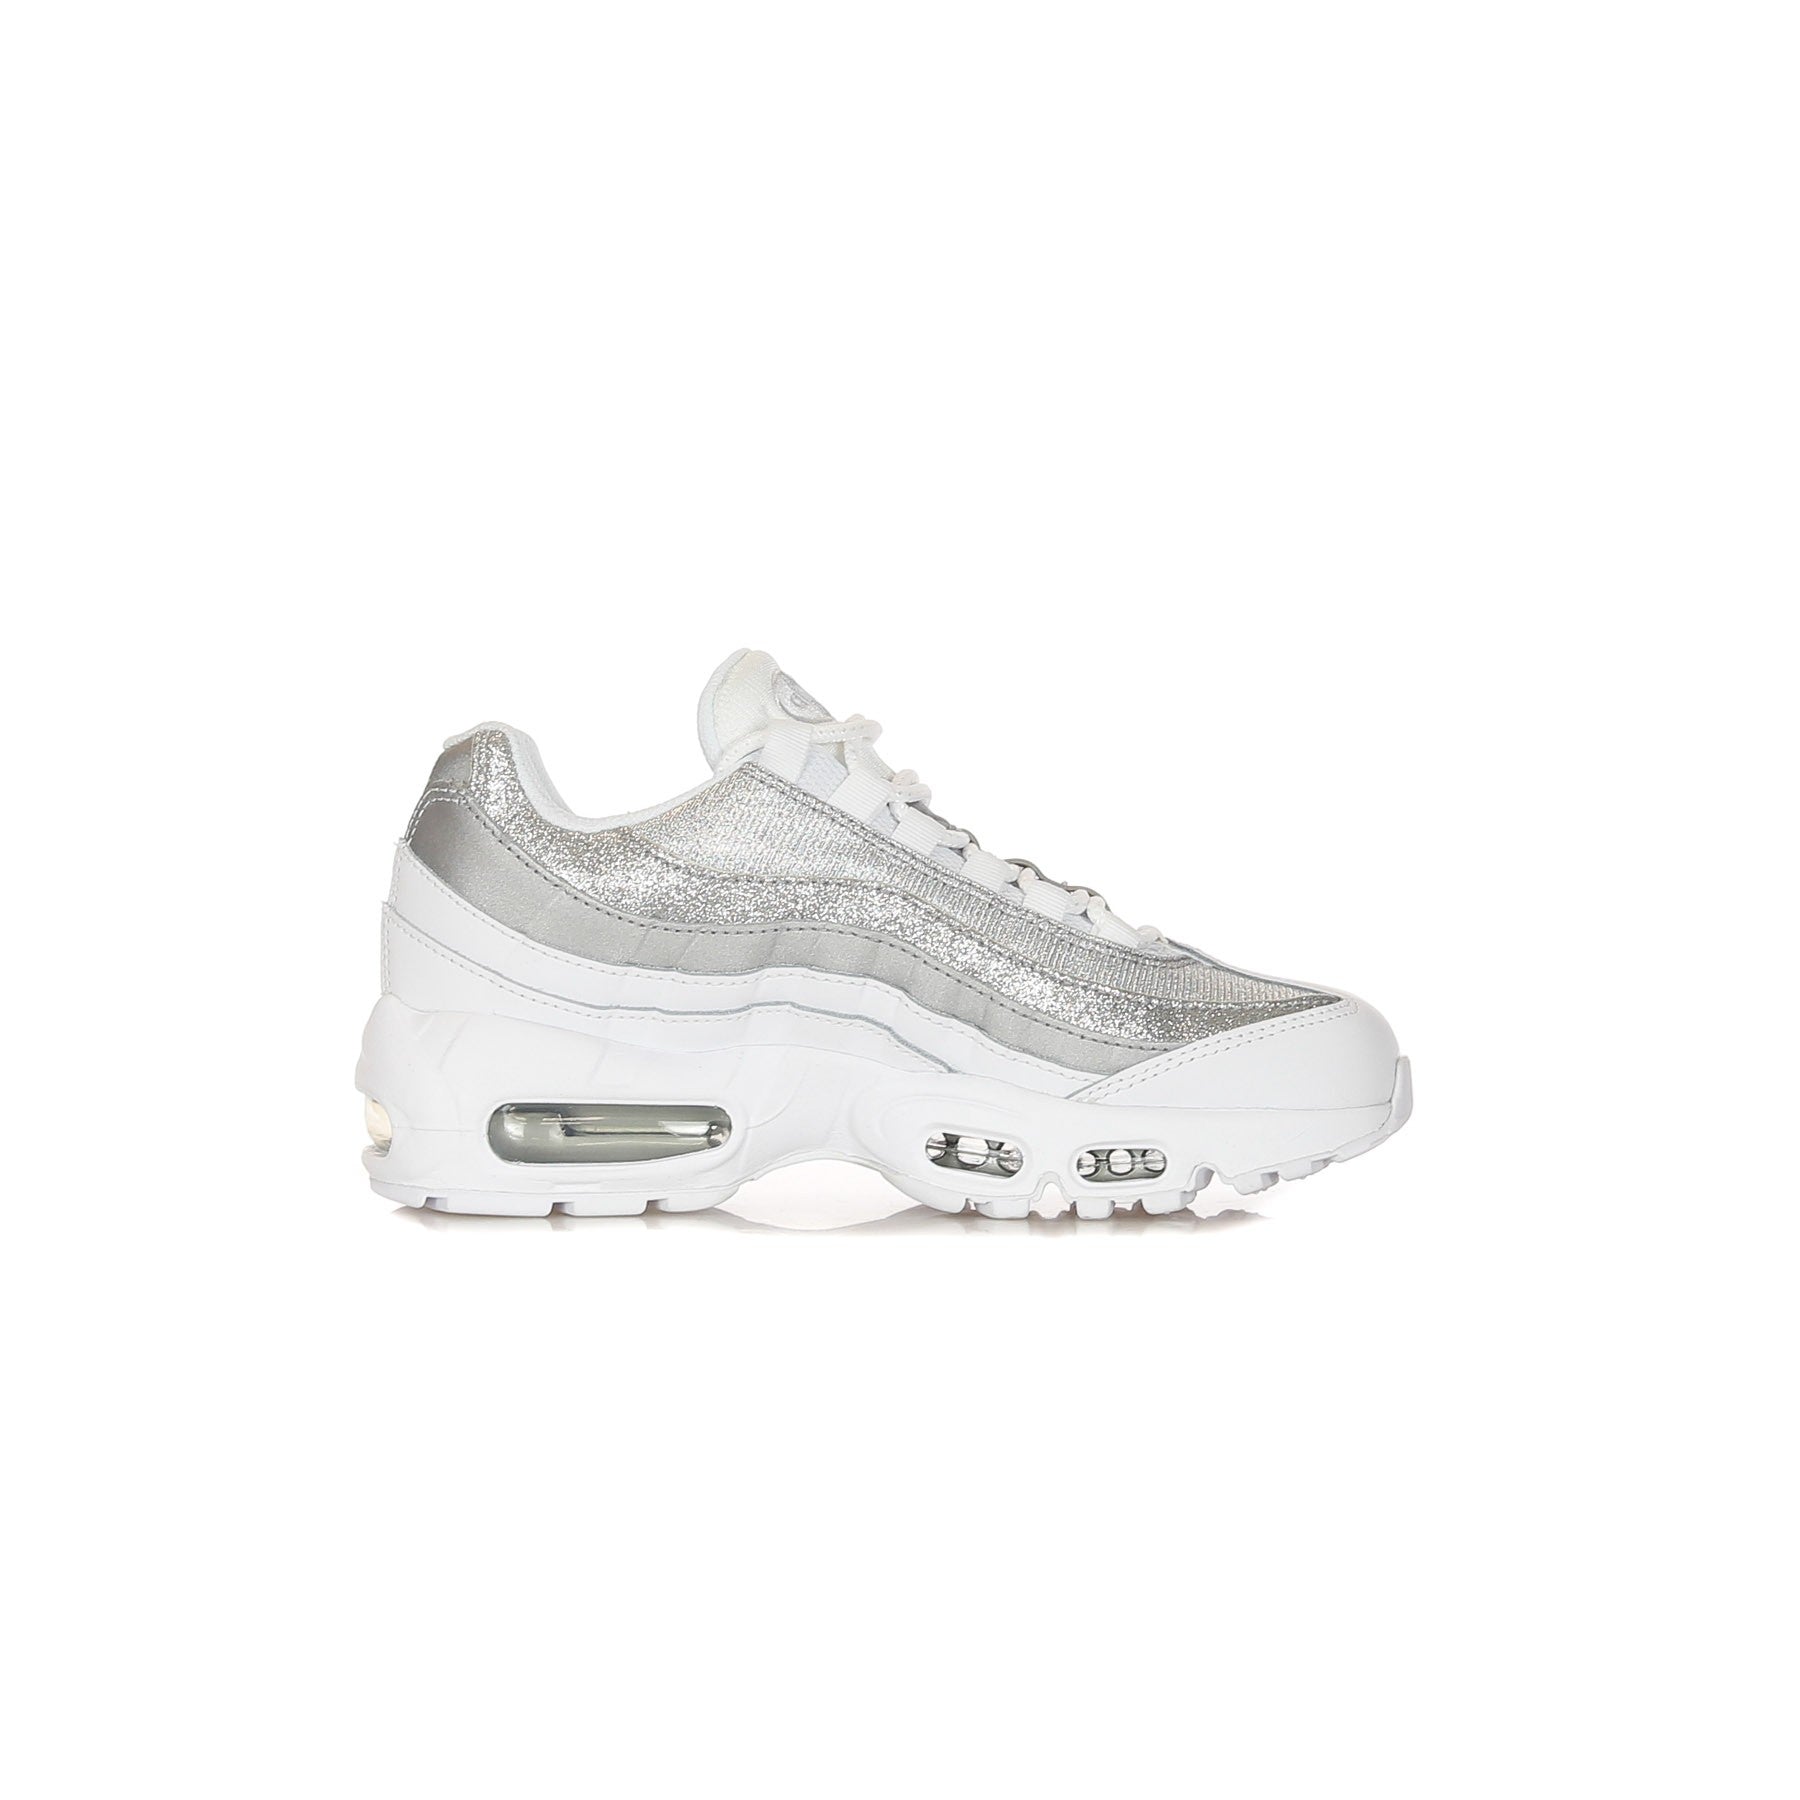 Nike, Scarpa Bassa Donna Wmns Air Max 95, White/white/metallic Silver